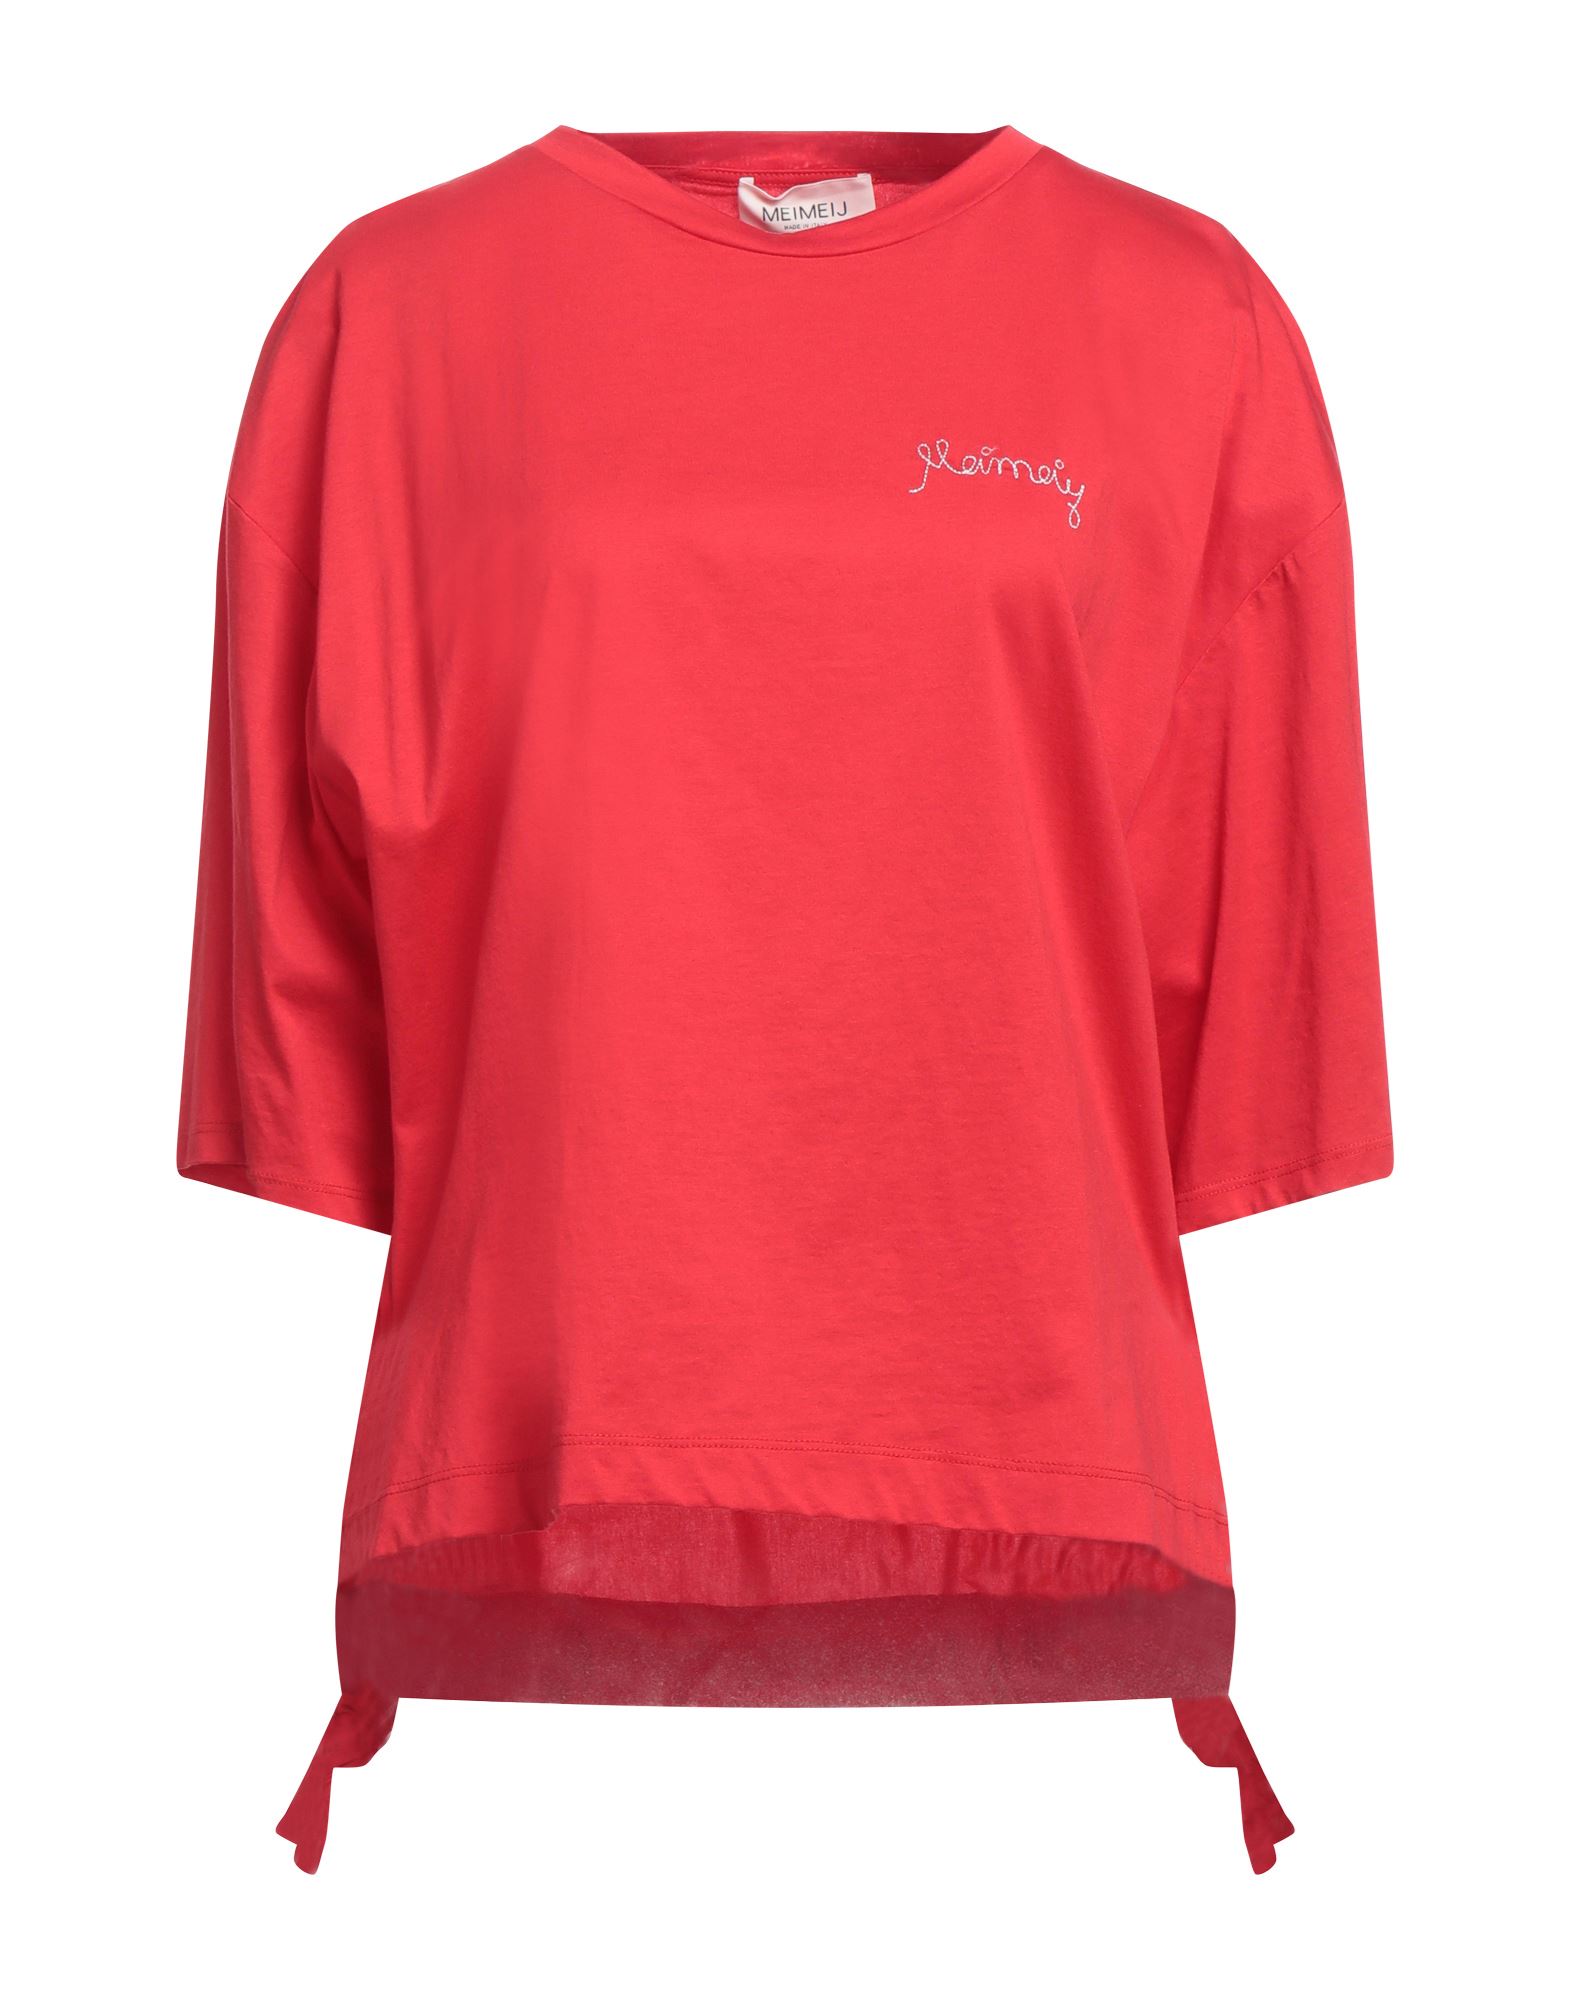 MEIMEIJ T-shirts Damen Rot von MEIMEIJ